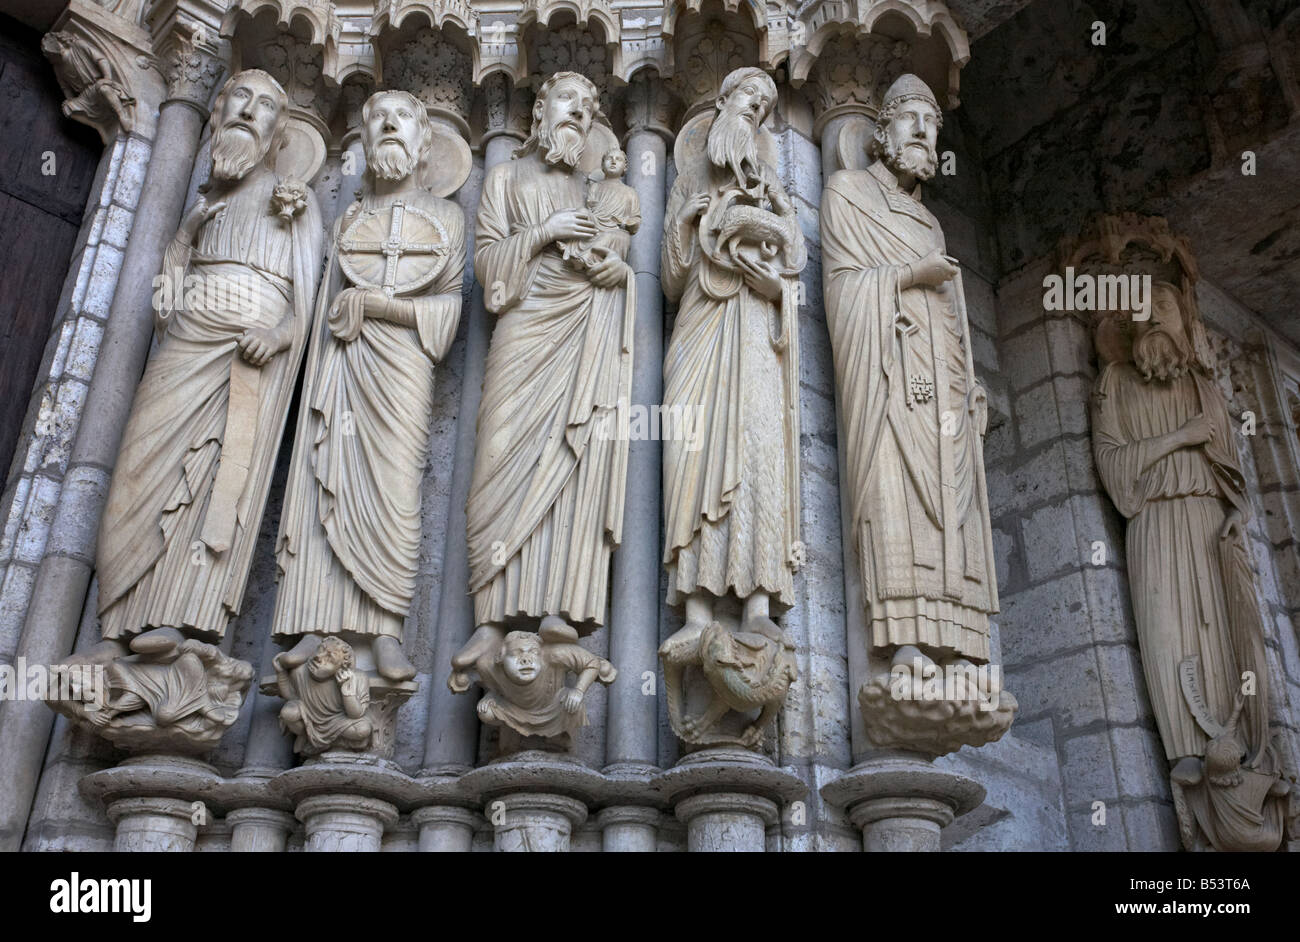 Des statues d'Ésaïe, Jérémie, Siméon, Jean le Baptiste, Saint Pierre, et Elie, Cathédrale de Chartres Eure et Loir France Banque D'Images